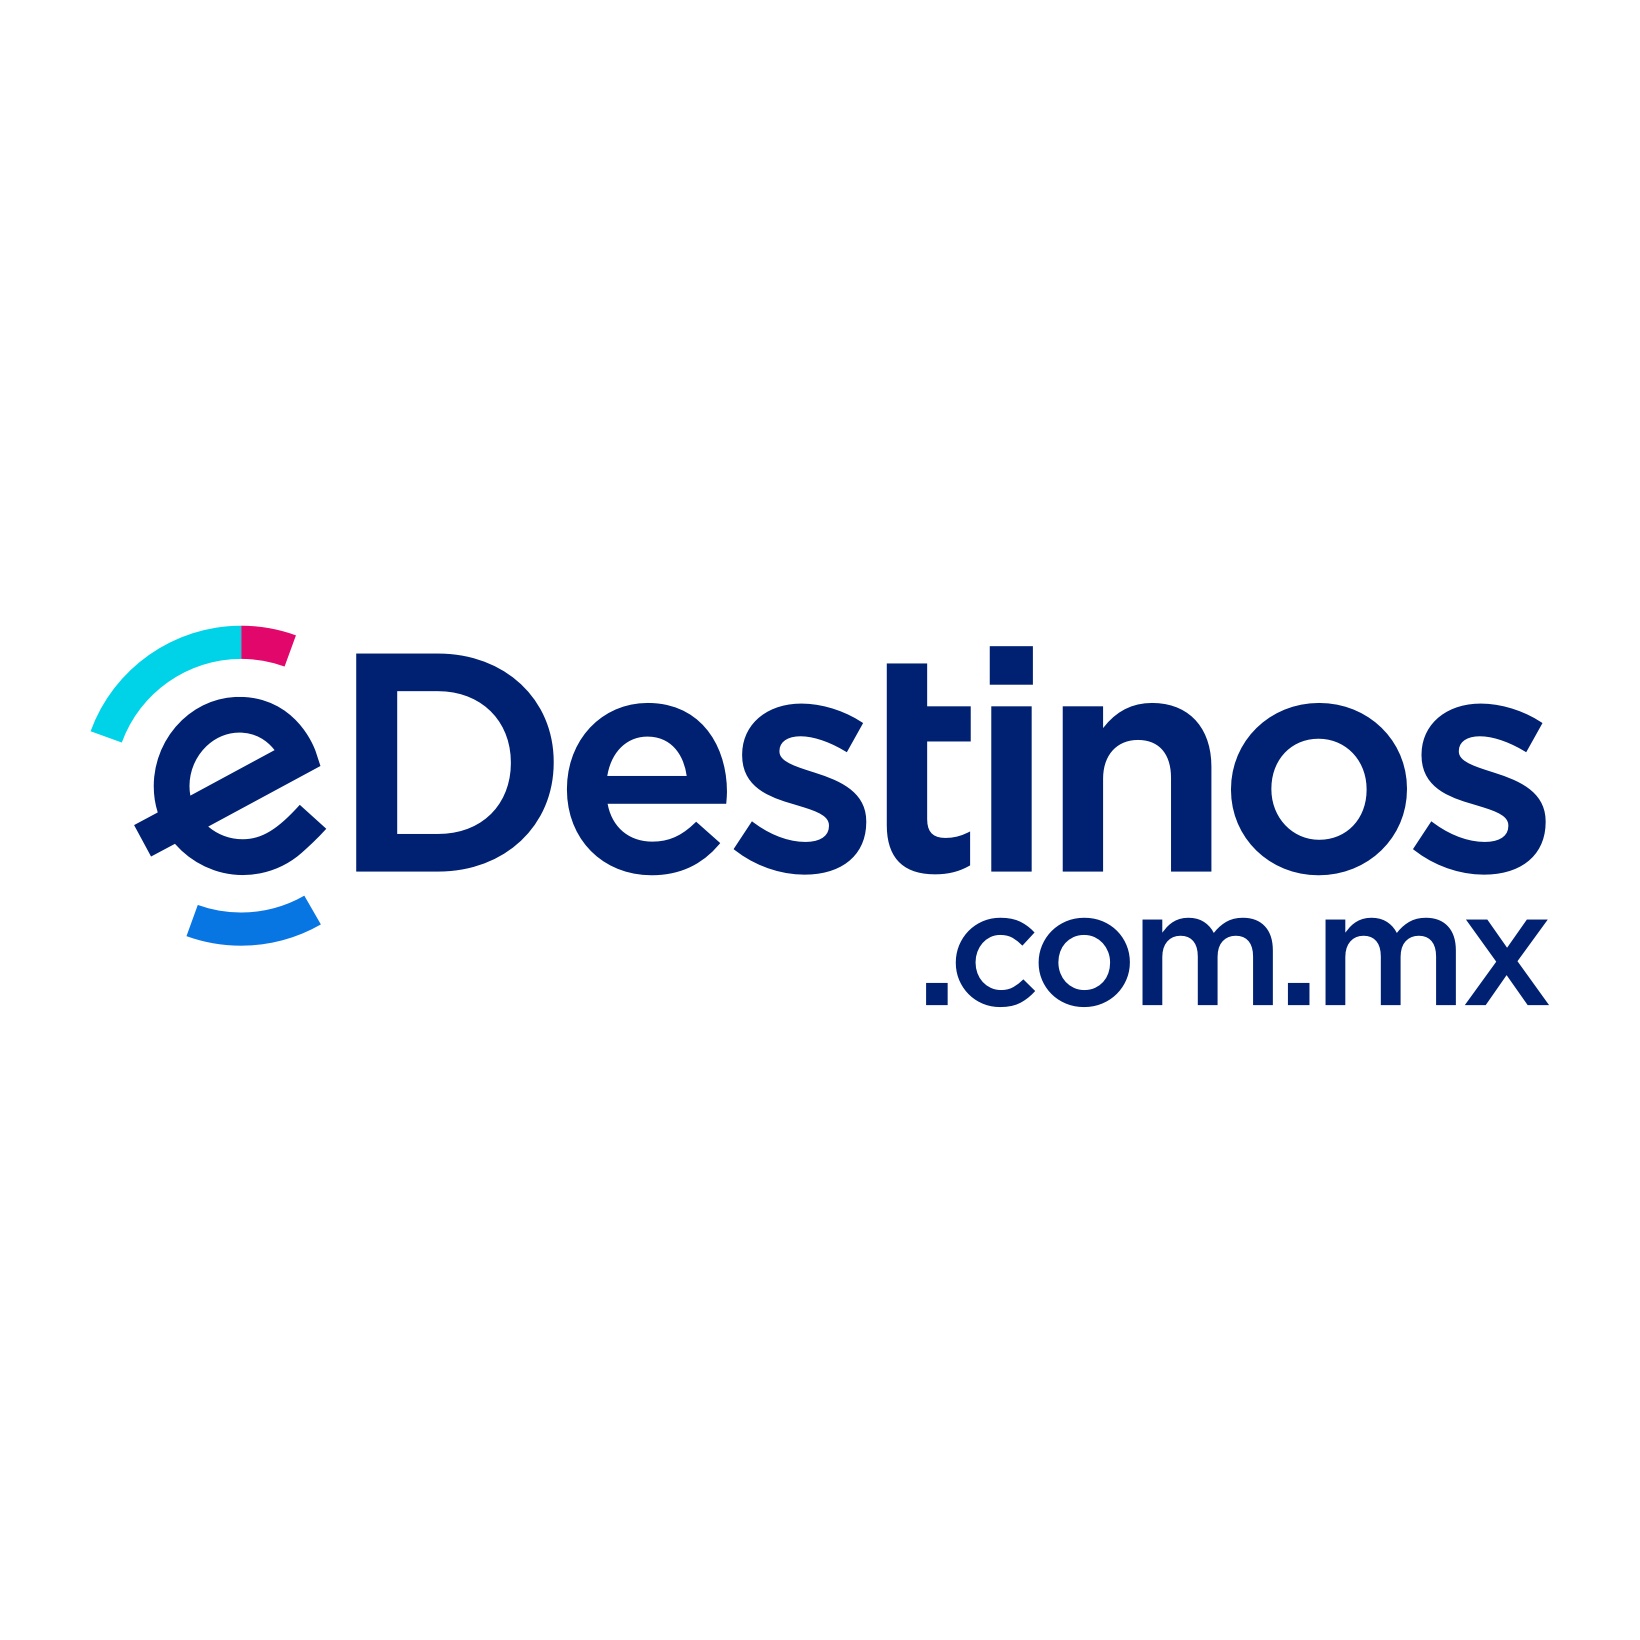 (c) Edestinos.com.mx